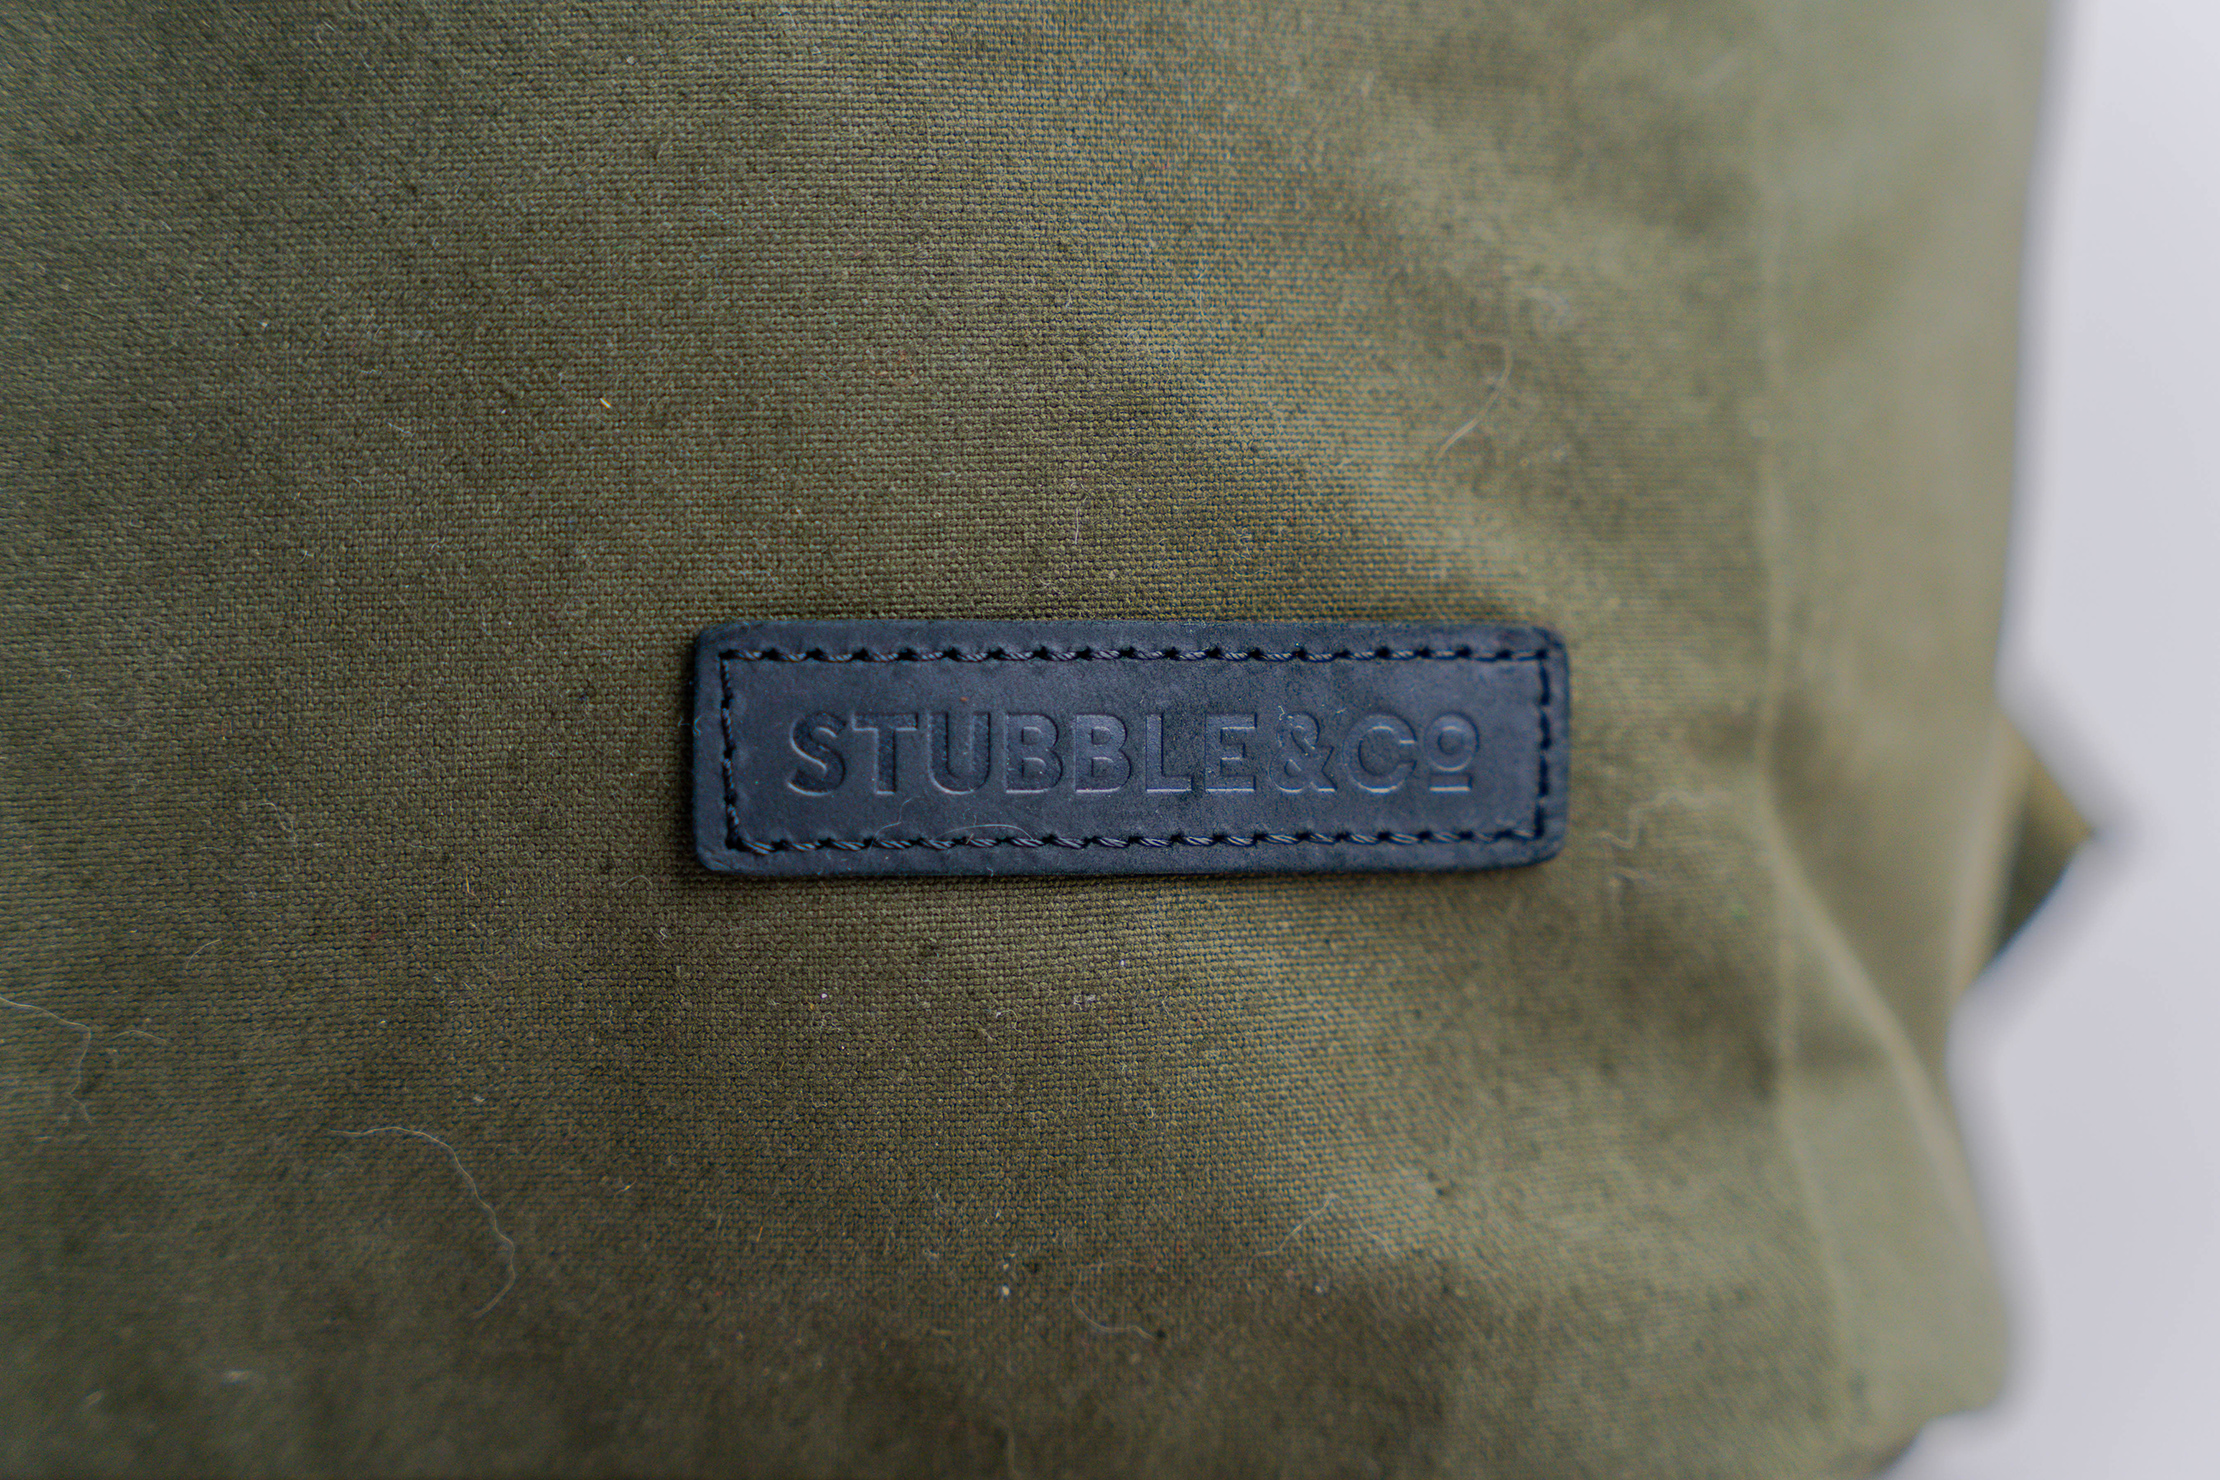 Stubble & Co The Backpack Branding